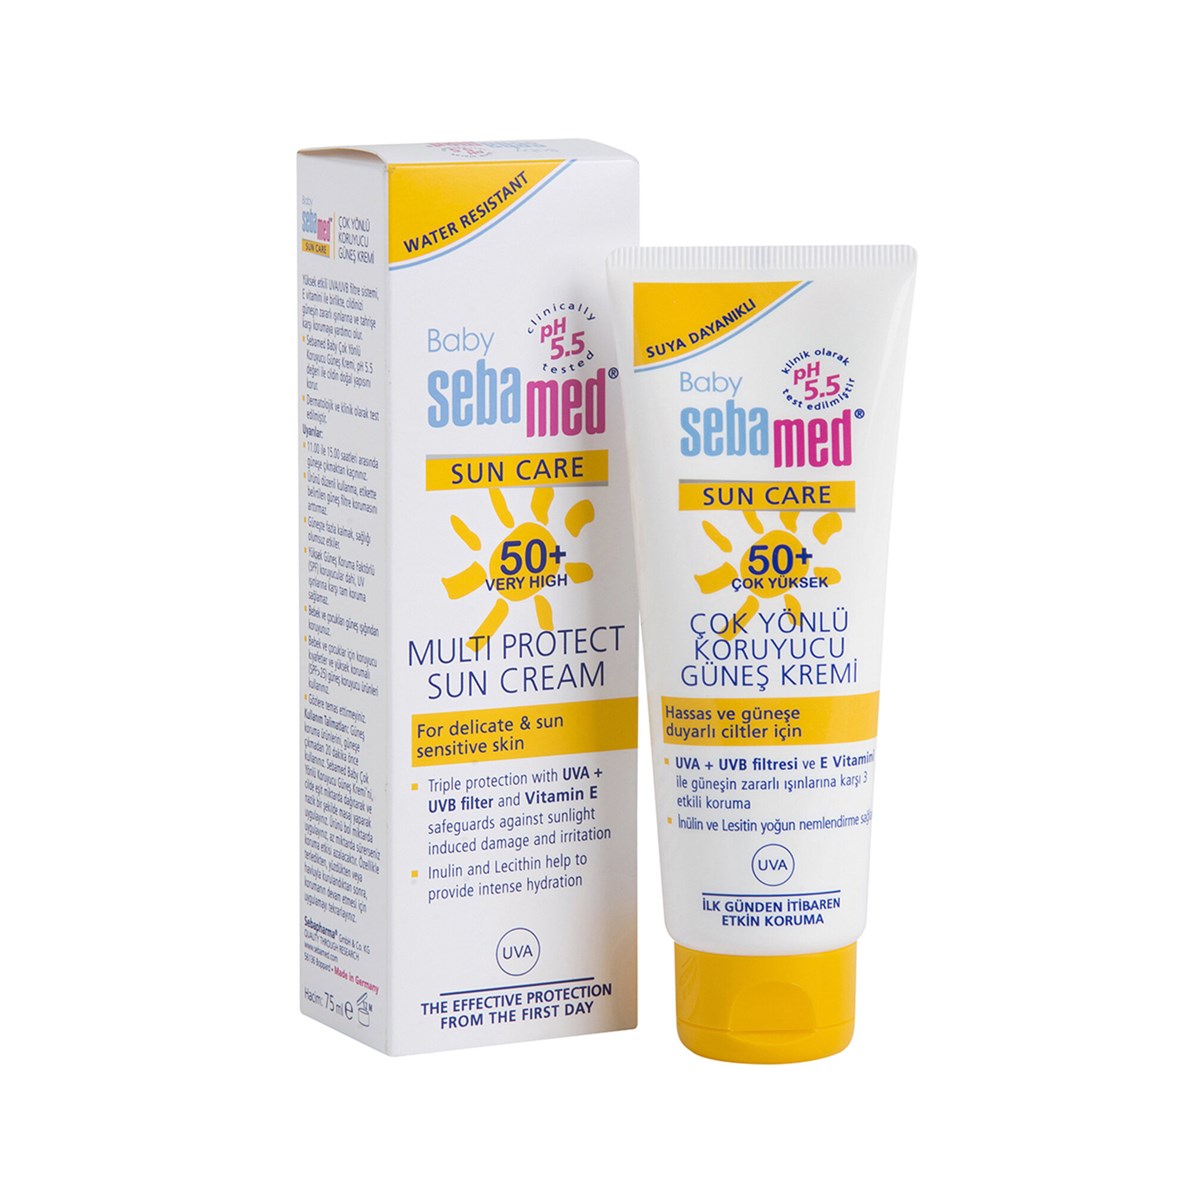 Sebamed Baby Sun Care 50+ Çok Yüksek Çok Yönlü Koruyucu Güneş Kremi 75 ml